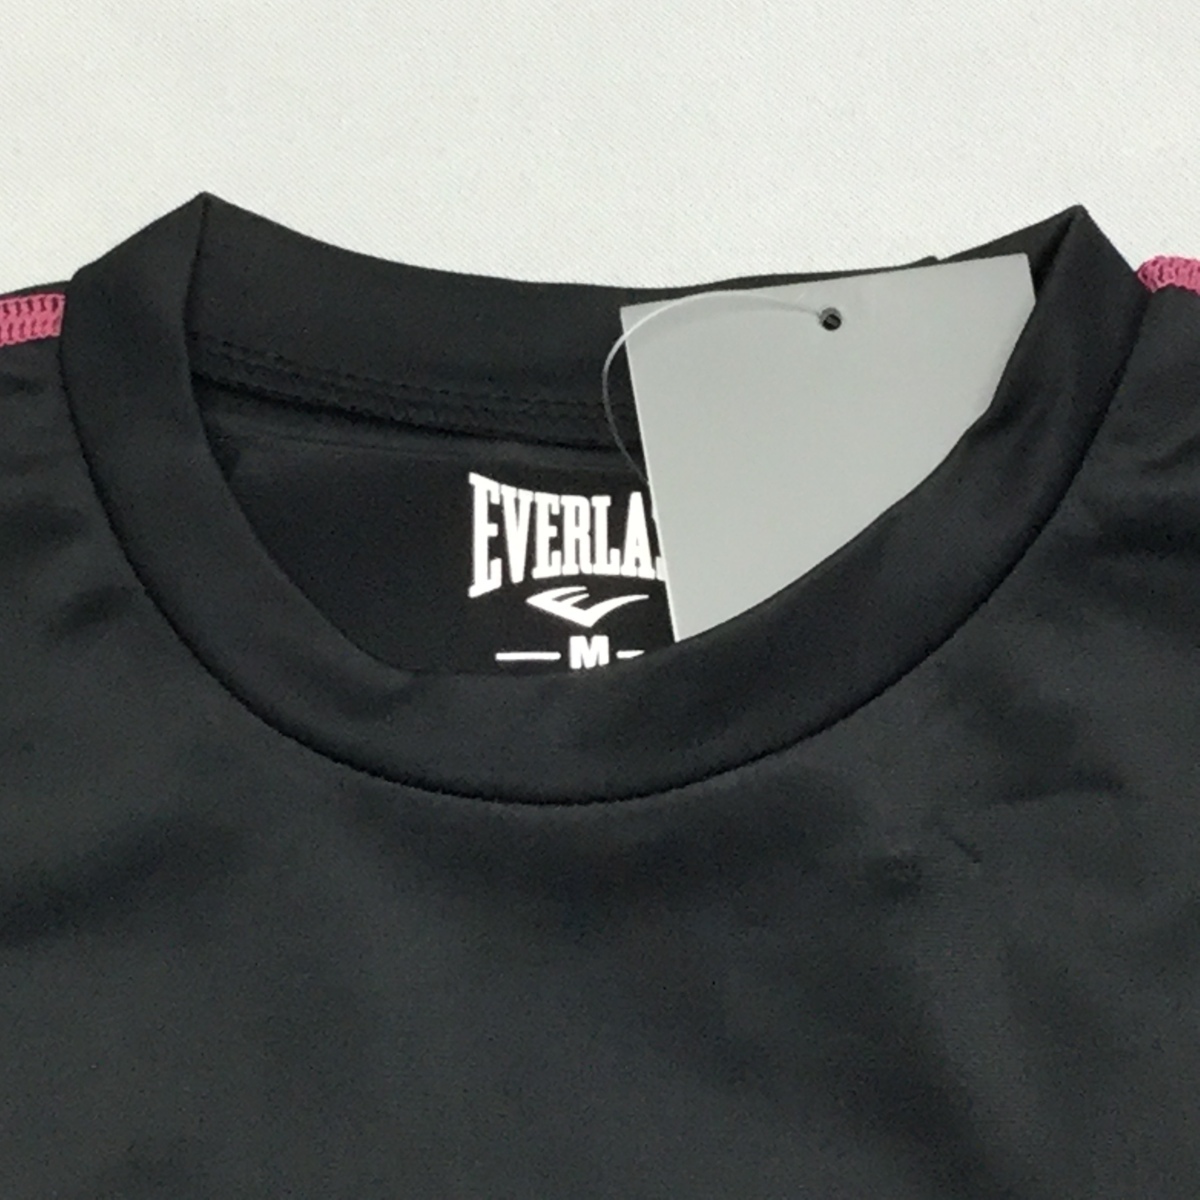 [ бесплатная доставка ][ новый товар ]EVERLAST женский компрессионный рубашка ( круглый вырез ) M черный * rose *19051